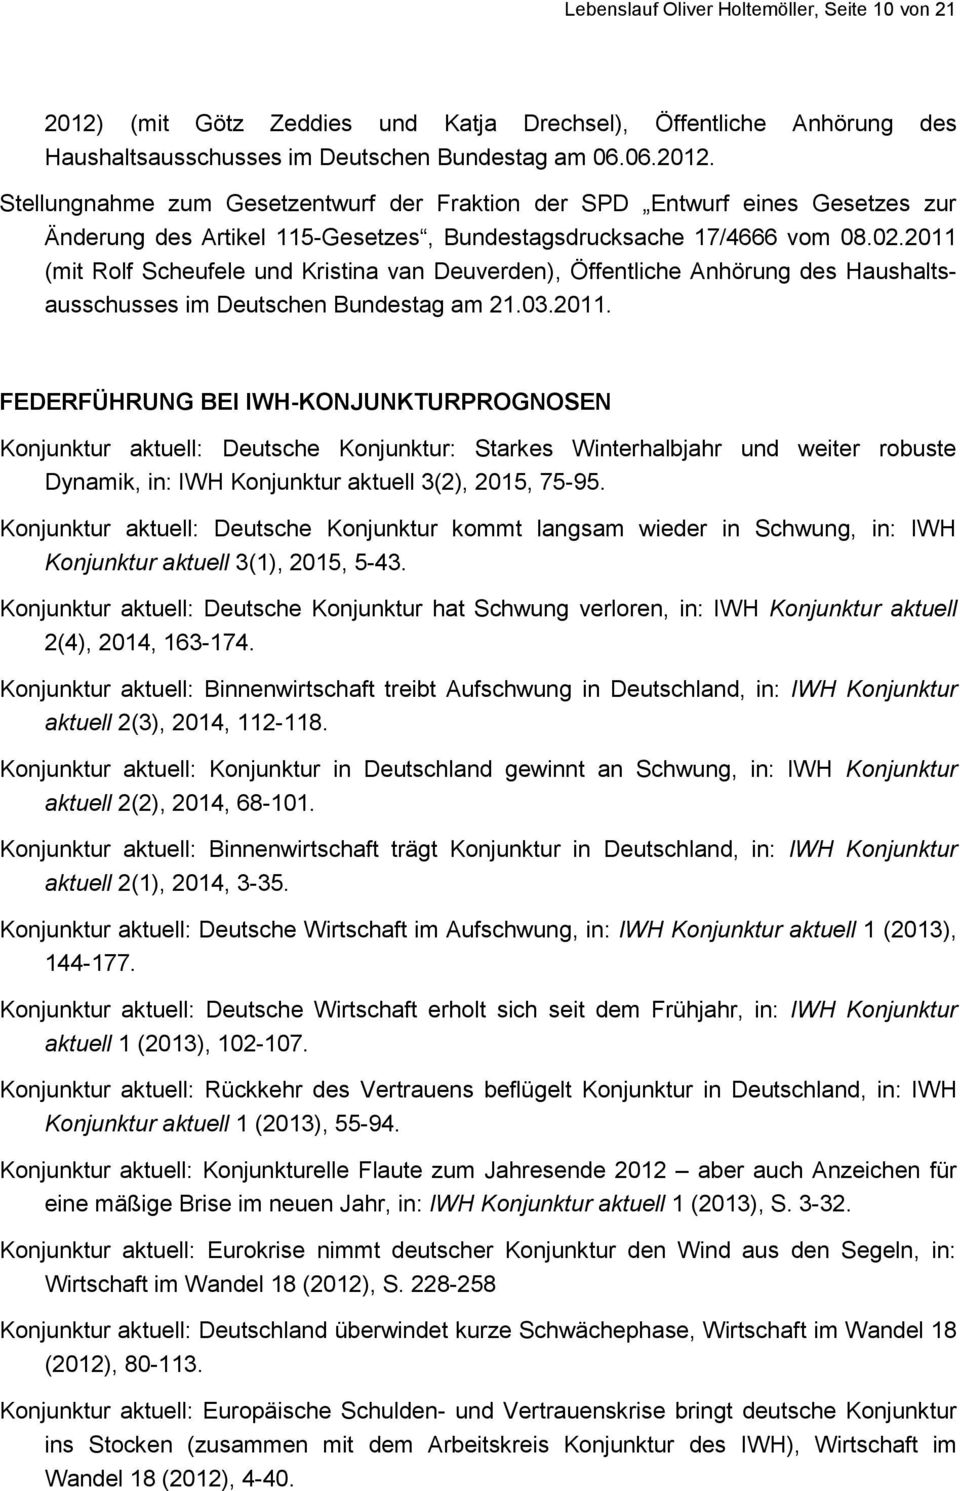 Stellungnahme zum Gesetzentwurf der Fraktion der SPD Entwurf eines Gesetzes zur Änderung des Artikel 115-Gesetzes, Bundestagsdrucksache 17/4666 vom 08.02.